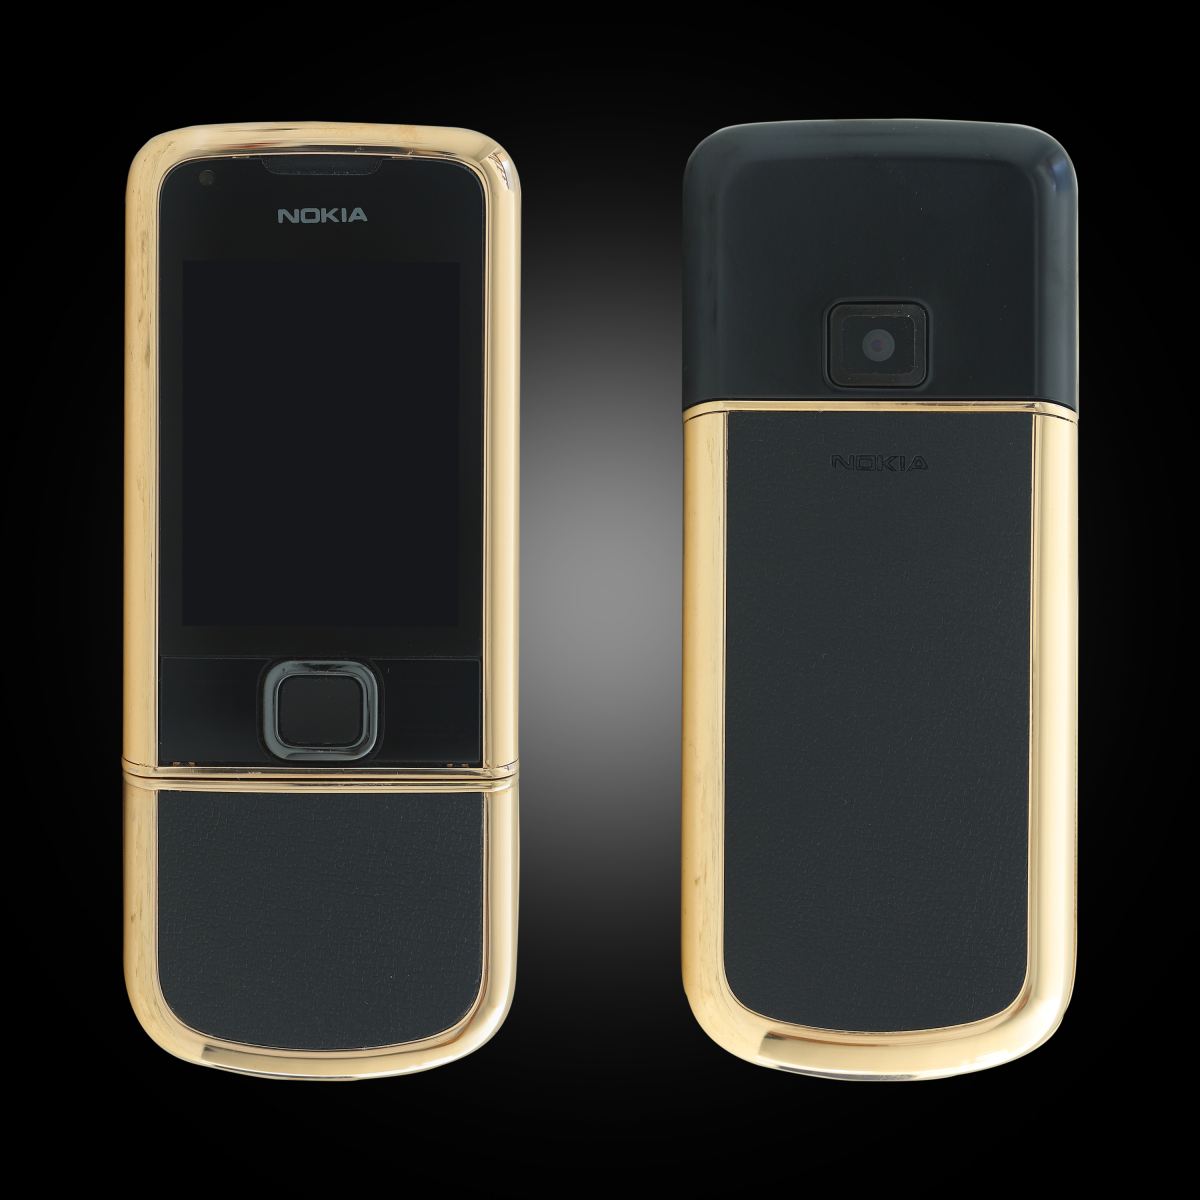 Nokia 8800E Rose Gold: Sự hoàn hảo của thiết kế góp phần tạo nên nét đẹp tinh tế, sang trọng cho Nokia 8800E Rose Gold. Bạn sẽ không thể rời mắt khỏi hình ảnh liên quan khi cùng nhìn nhận nét quyến rũ của sản phẩm này.